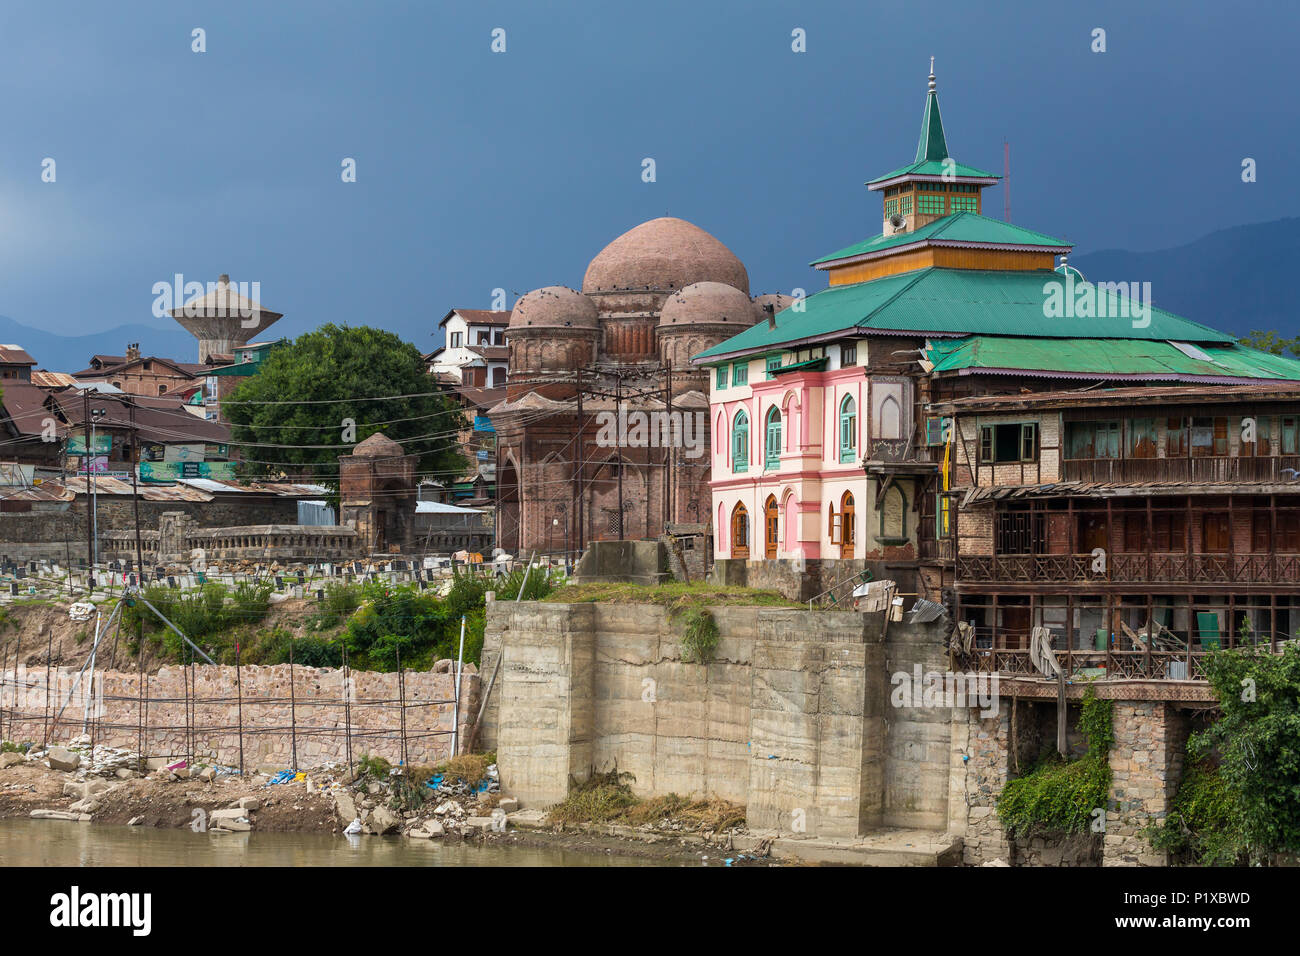 Srinagar, Inde - 15 juin 2017 : Riverside vue sur la vieille ville de Srinagar à partir de l'un des ponts sur la rivière Jhelum, Jammu-et-Cachemire, en Inde. Banque D'Images